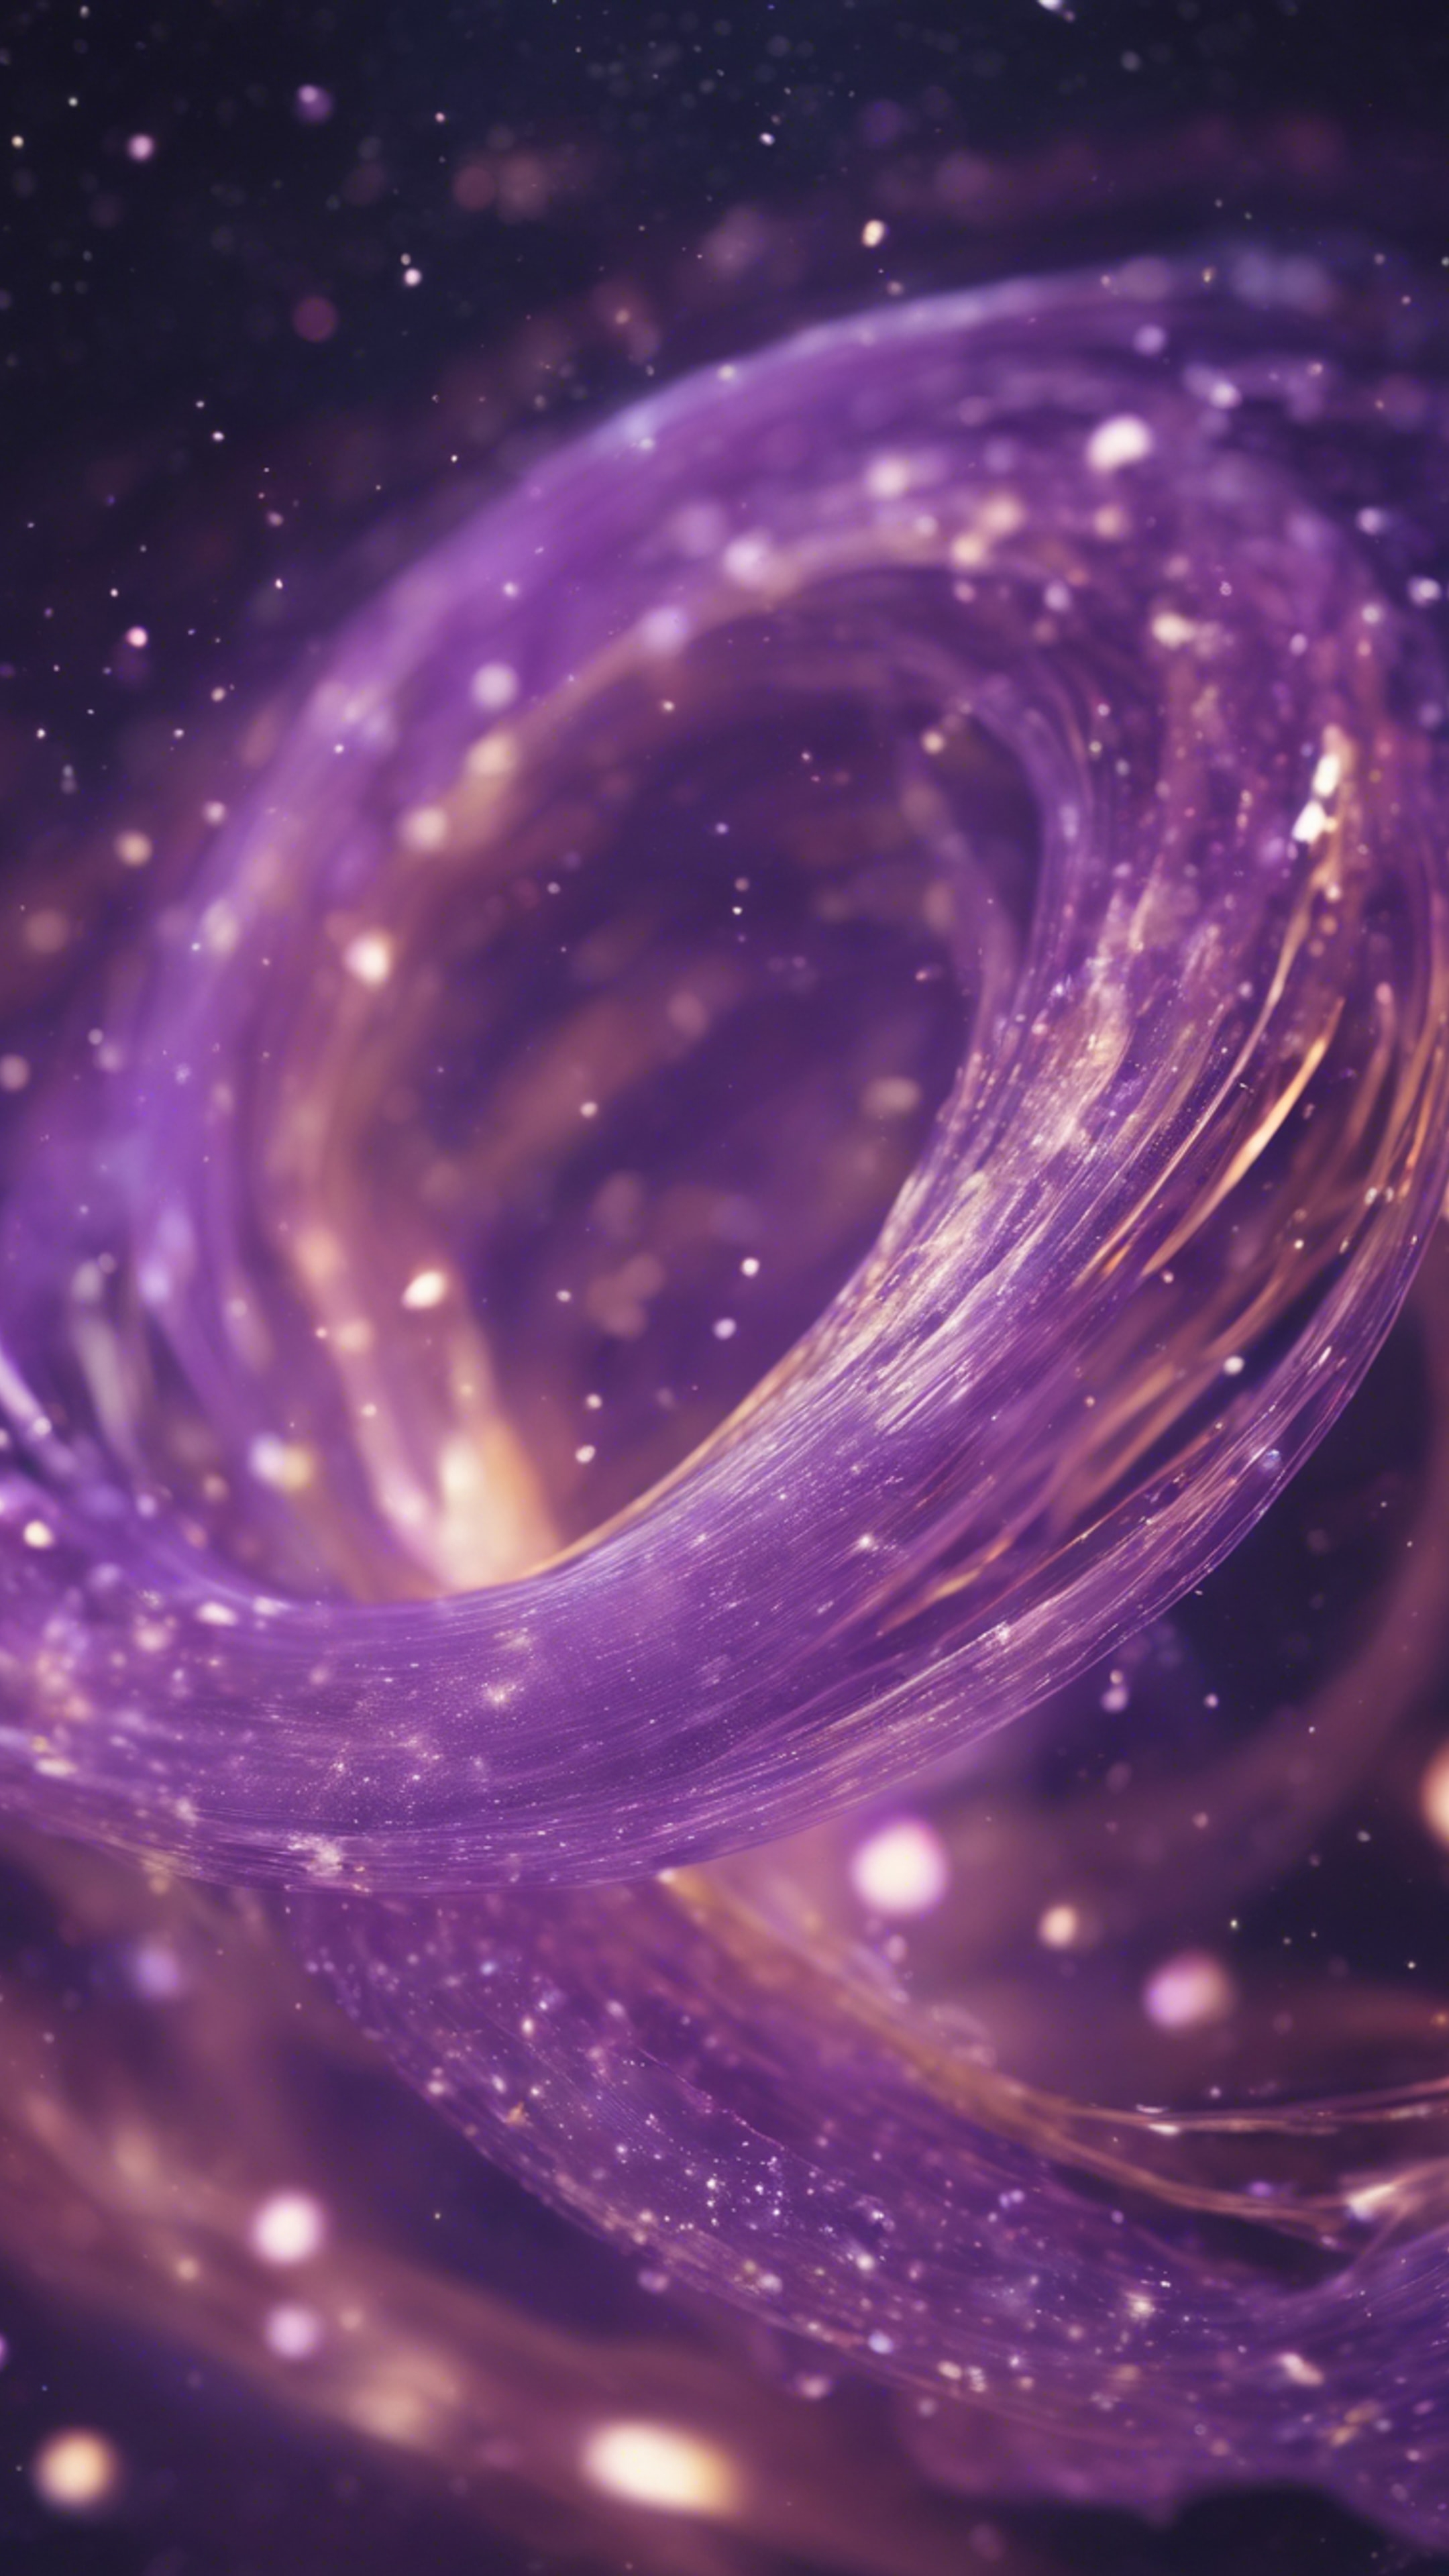 Spectral swirls of light purple shades dancing in cosmic space.壁紙[e2f67fe74b19465780d0]